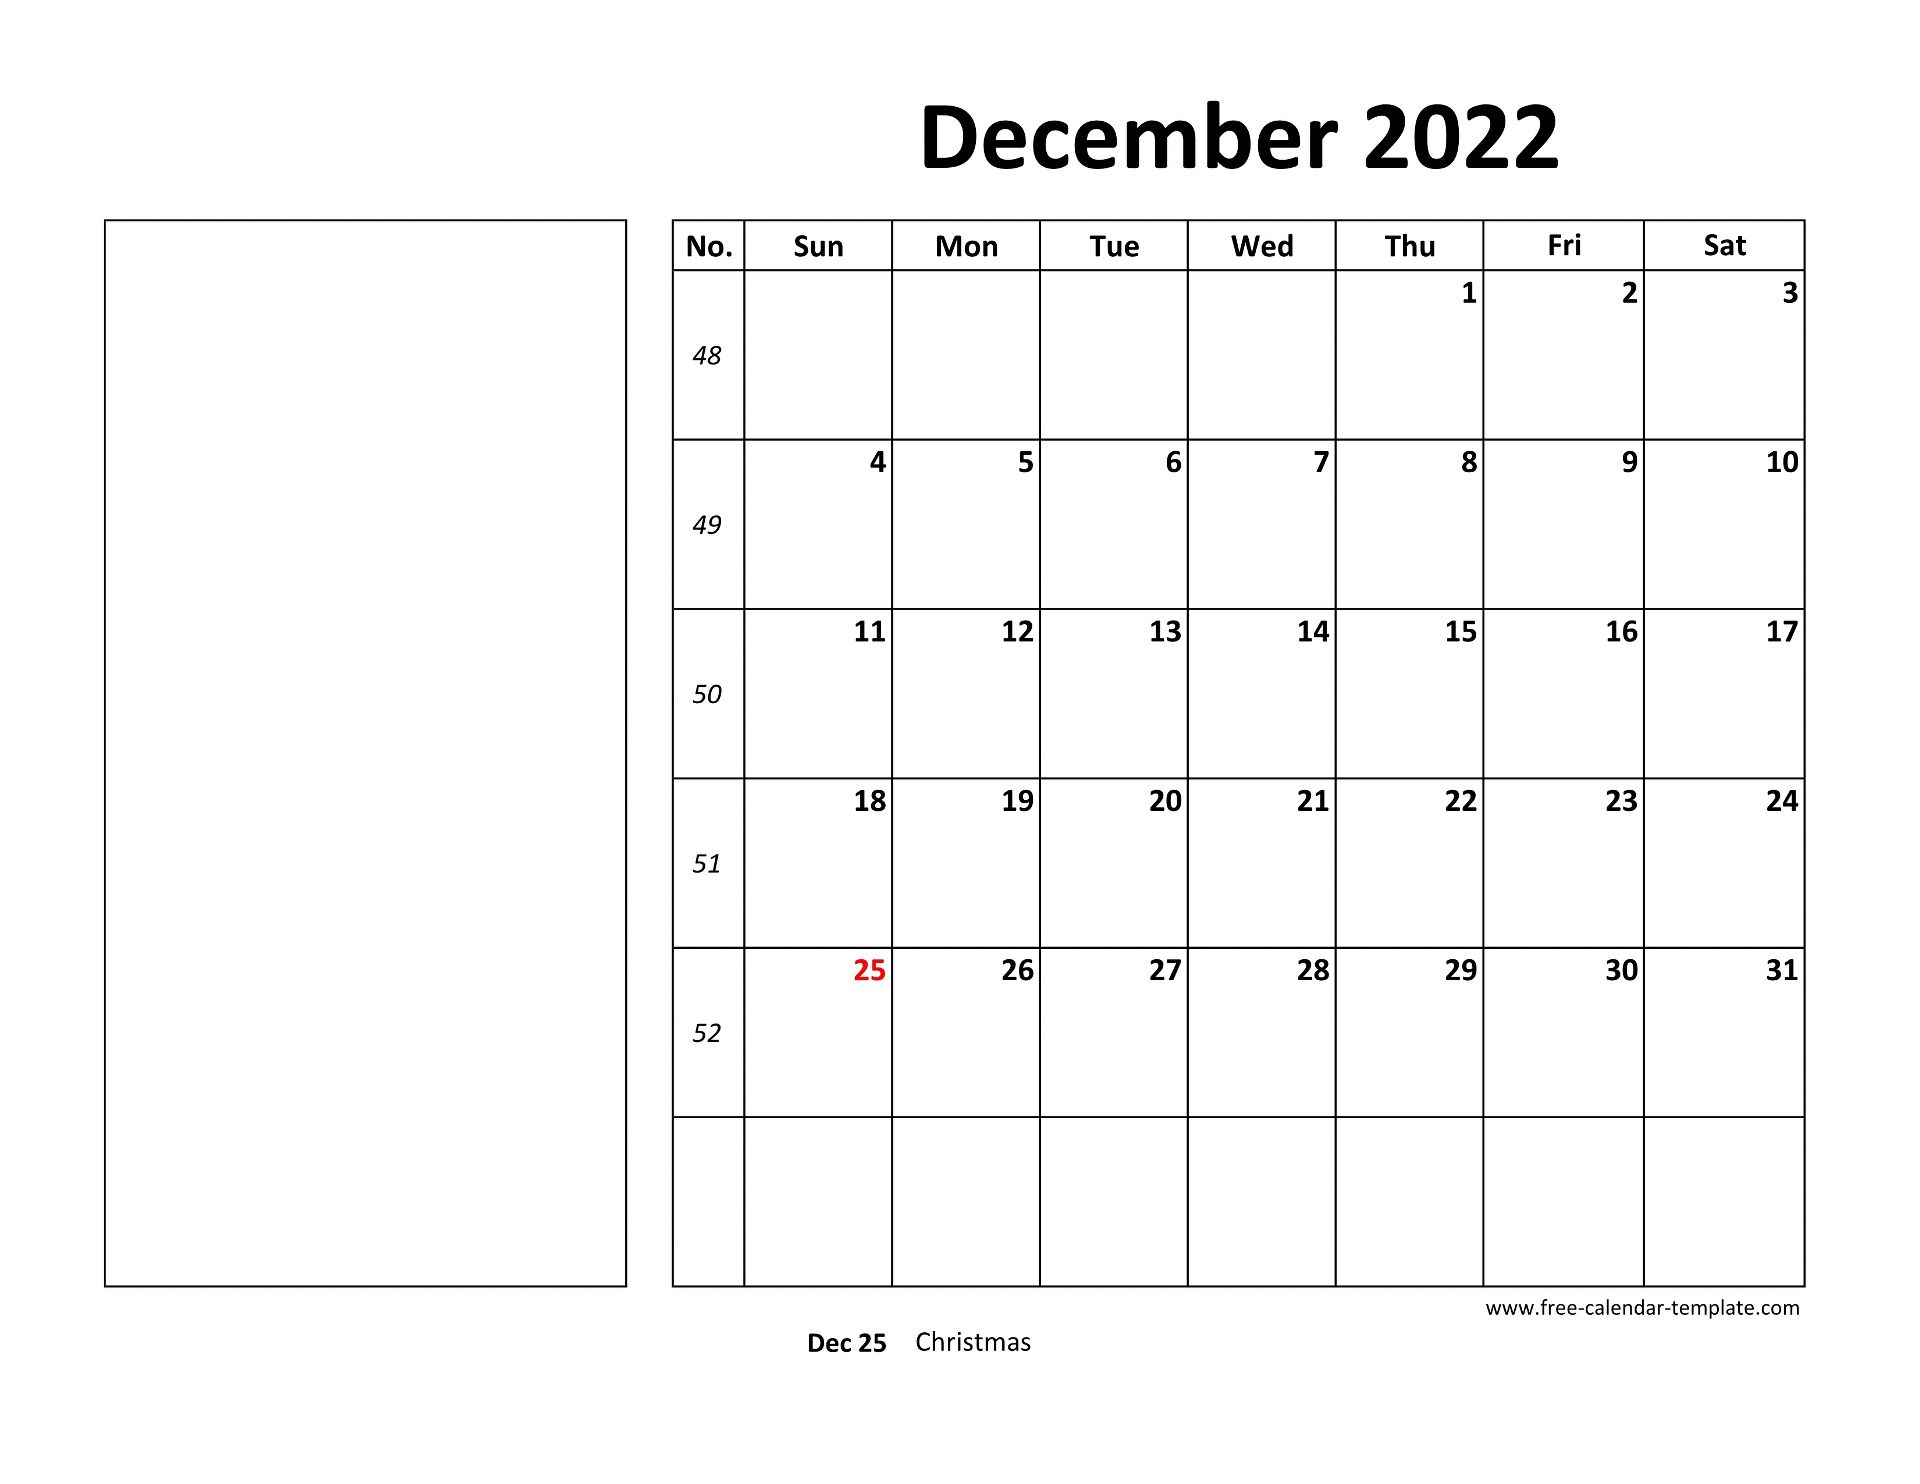 Printable December 2022 Calendar Box And Lines For Notes Free Calendar Template Com